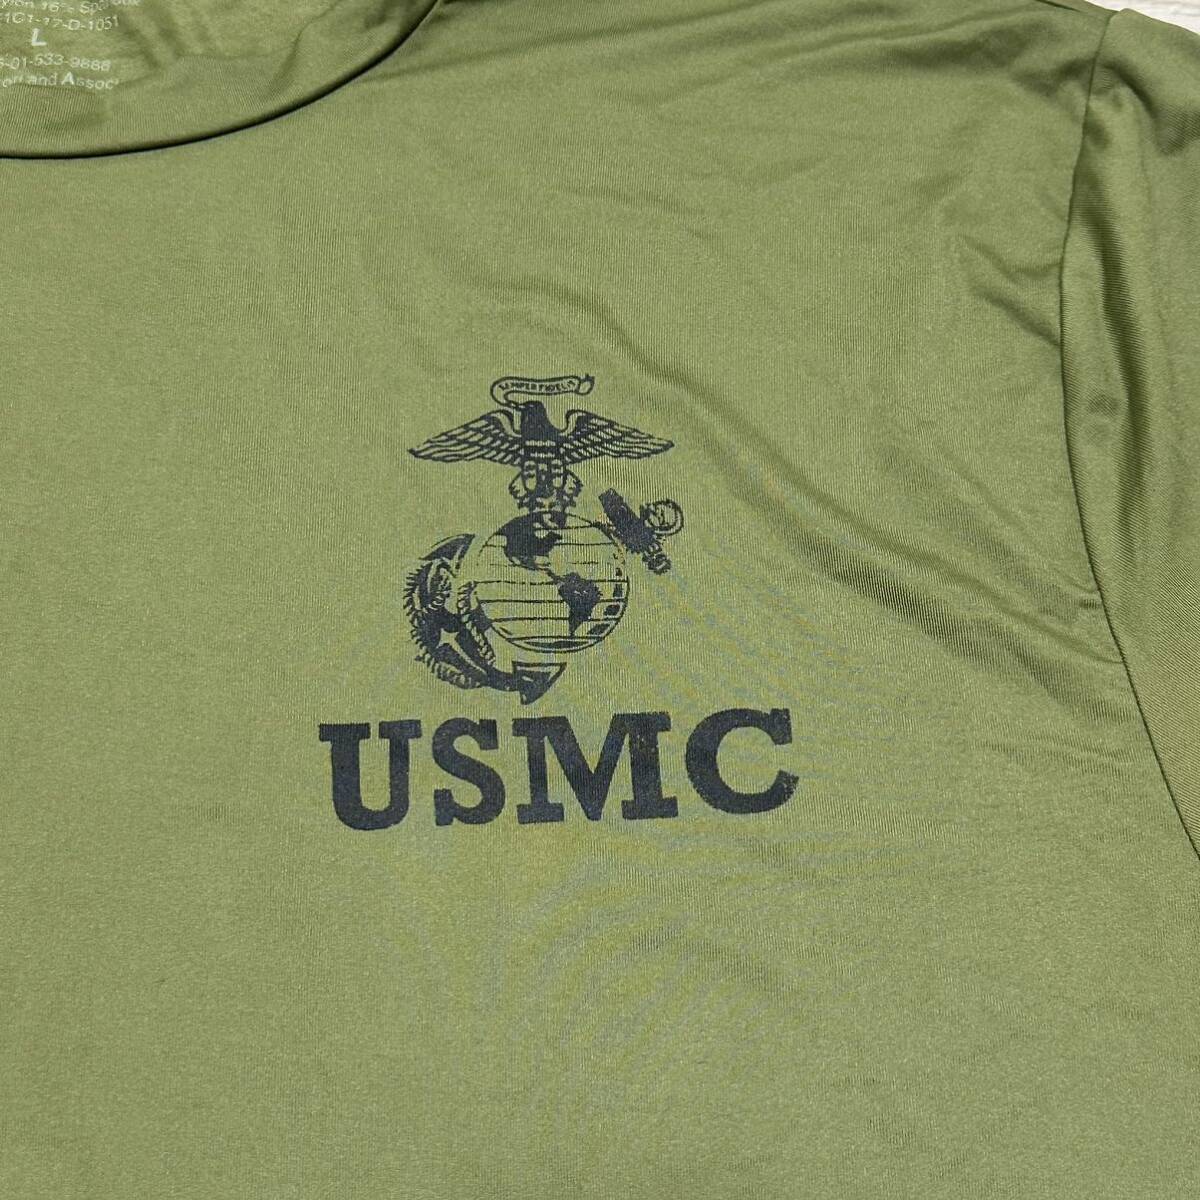 * популярный товар * Okinawa вооруженные силы США оригинал USMC MARINE милитари футболка стиль мода б/у одежда Vintage OD LARGE ( контрольный номер C124)